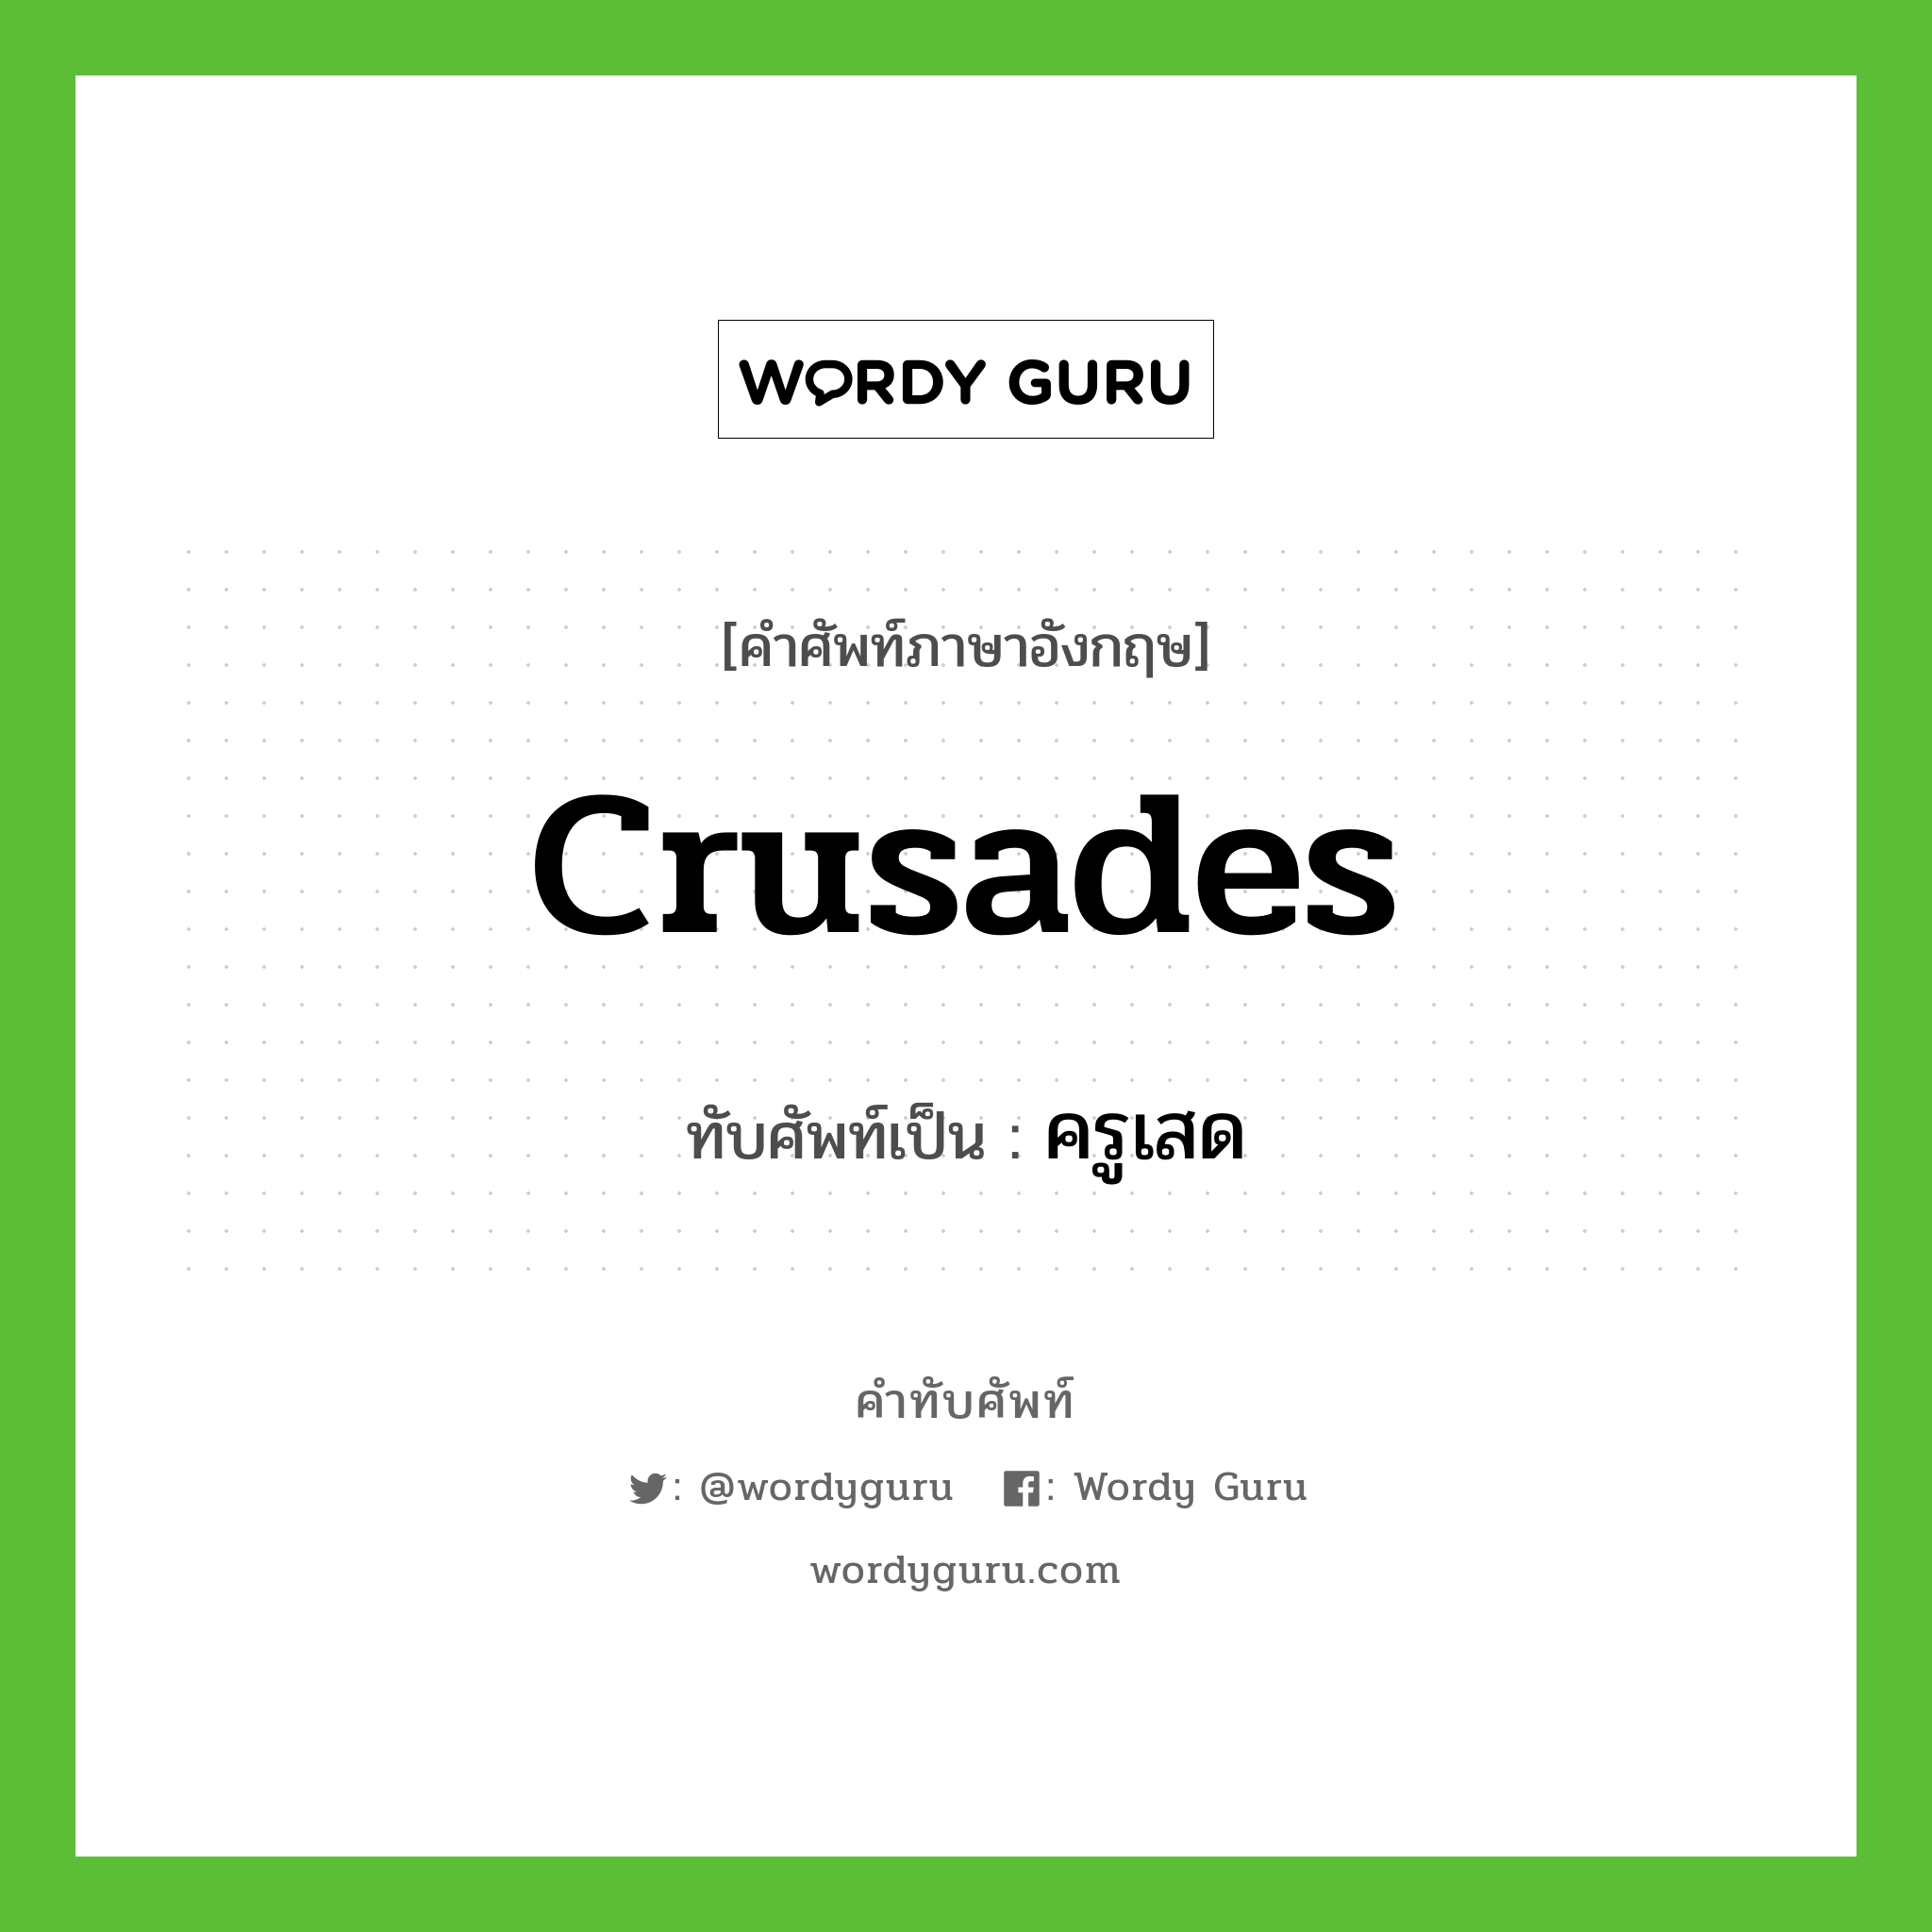 Crusades เขียนเป็นคำไทยว่าอะไร?, คำศัพท์ภาษาอังกฤษ Crusades ทับศัพท์เป็น ครูเสด